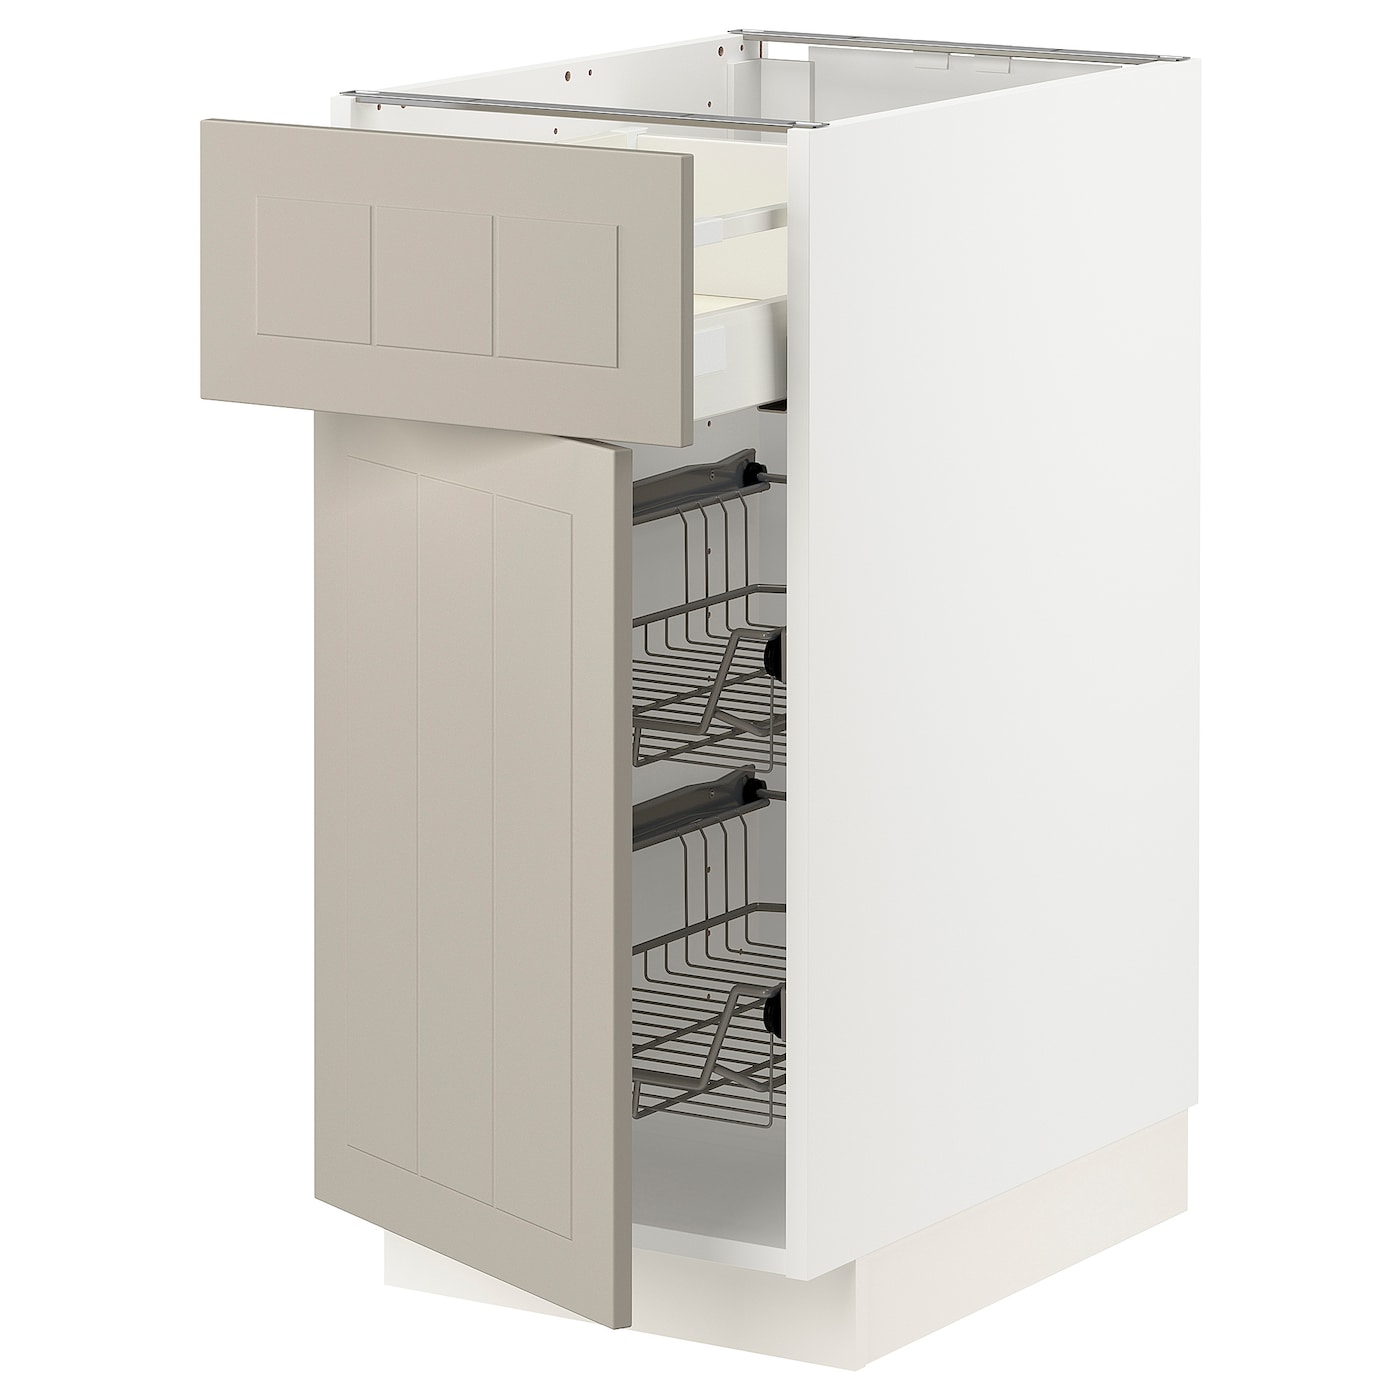 Напольный кухонный шкаф  - IKEA METOD MAXIMERA, 88x62x40см, белый/темно-бежевый, МЕТОД МАКСИМЕРА ИКЕА